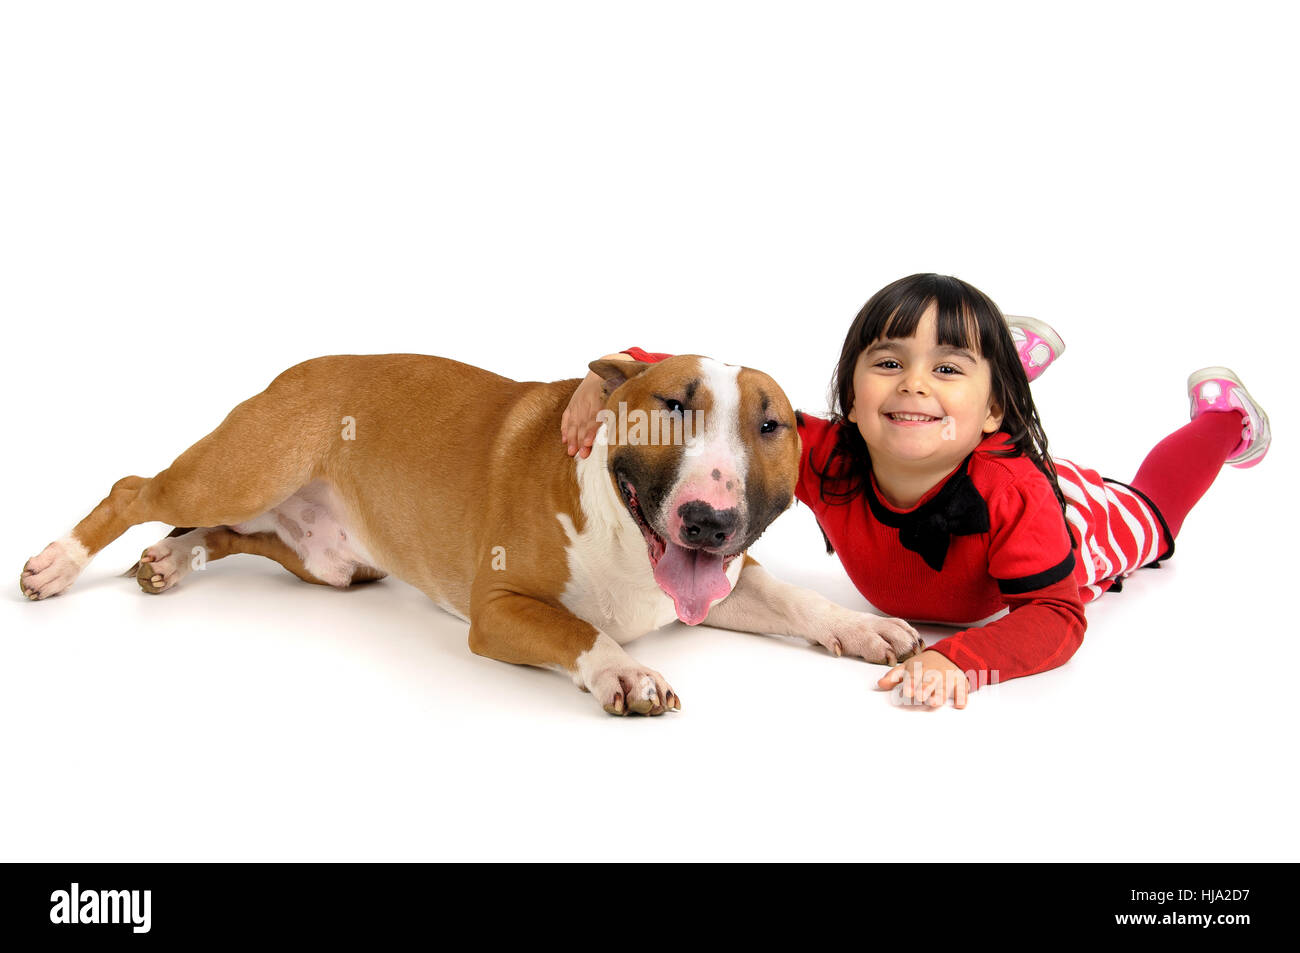 Amicizia, Bull, cane, canine, bambino, ragazza, ragazze, bambini, ragazzi, amicizia, Foto Stock